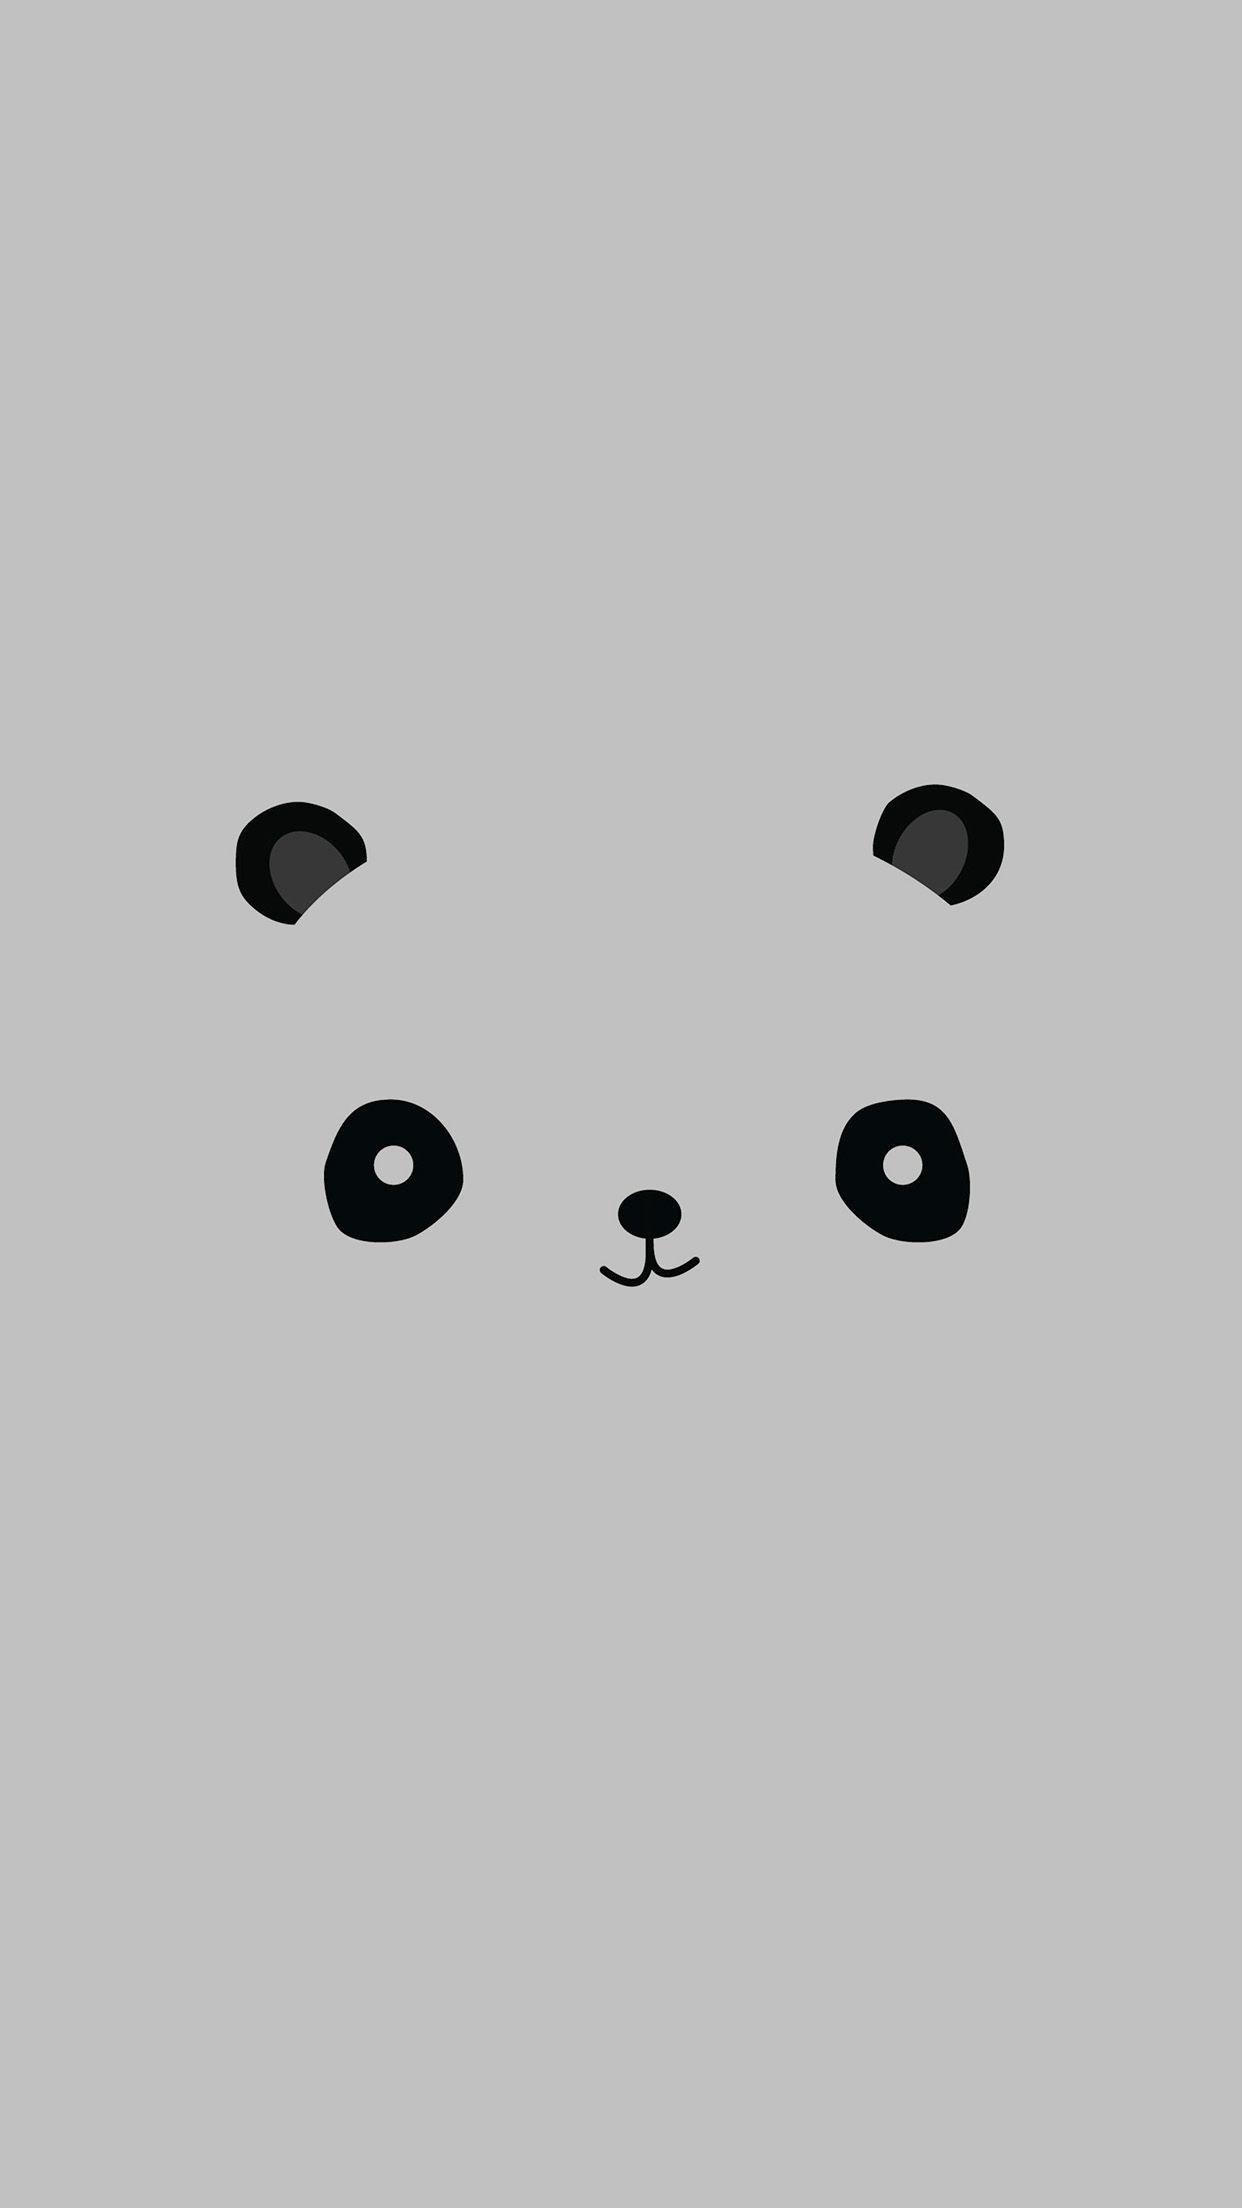 Download Minimal Panda Cute Android Wallpaper | Wallpapers.com